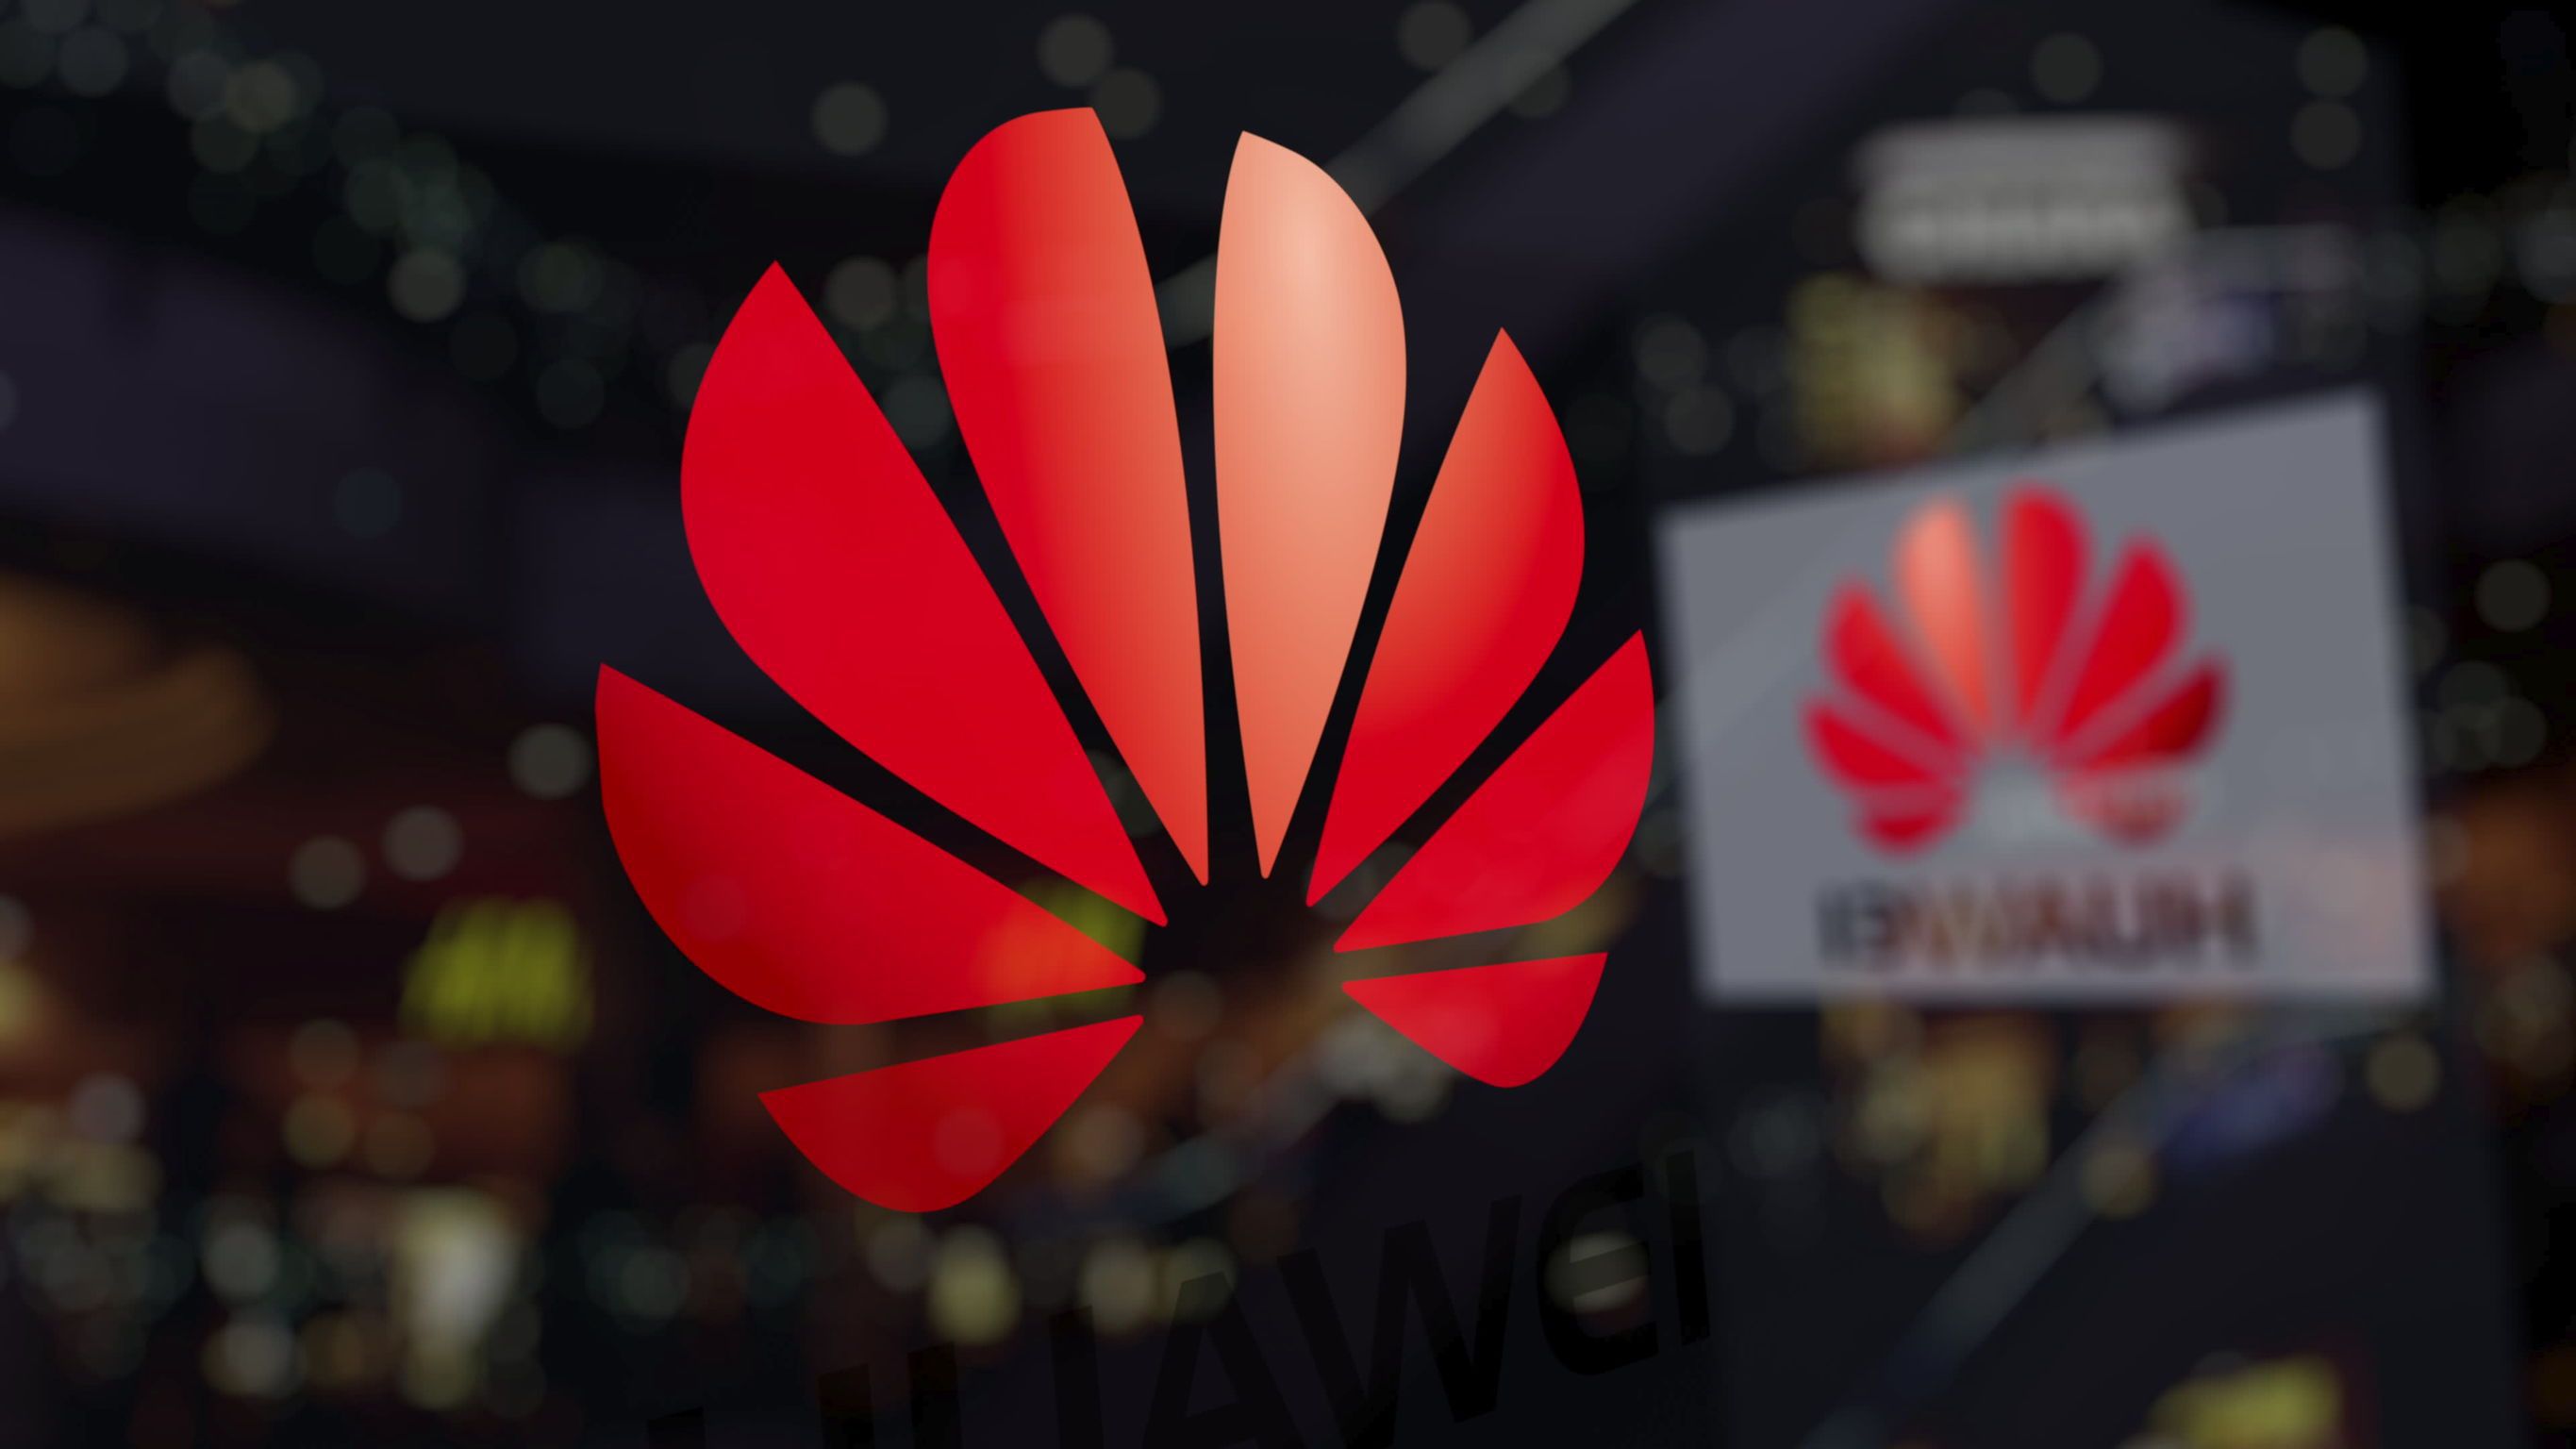 Reacţia Huawei România după decizia Guvernului de a respinge solicitarea de autorizare pentru construcţia de reţele 5G: „Suntem dezamăgiţi de decizia Guvernului României, decizie care nu are la bază nicio evaluare obiectivă şi nici a fost luată în urma unor constatări concrete”